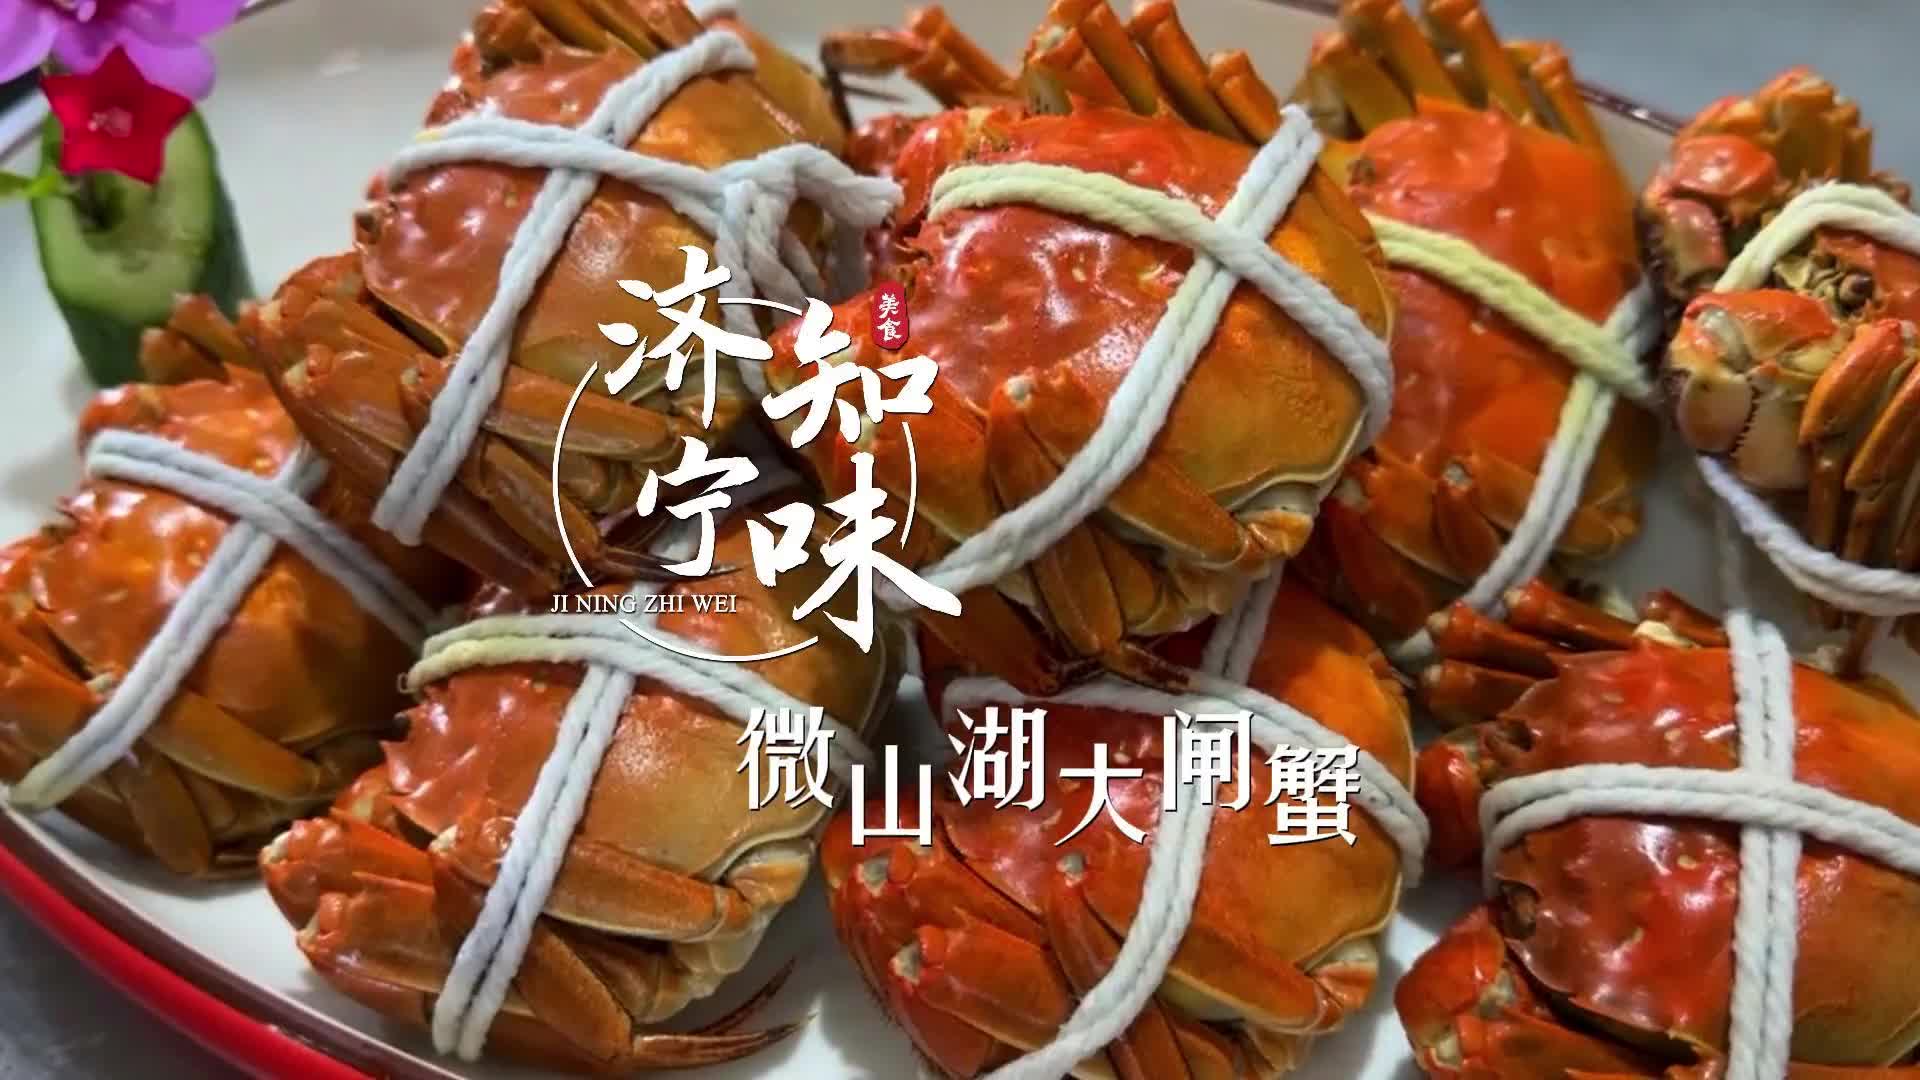 更济宁 | 济宁知味——微山湖大闸蟹